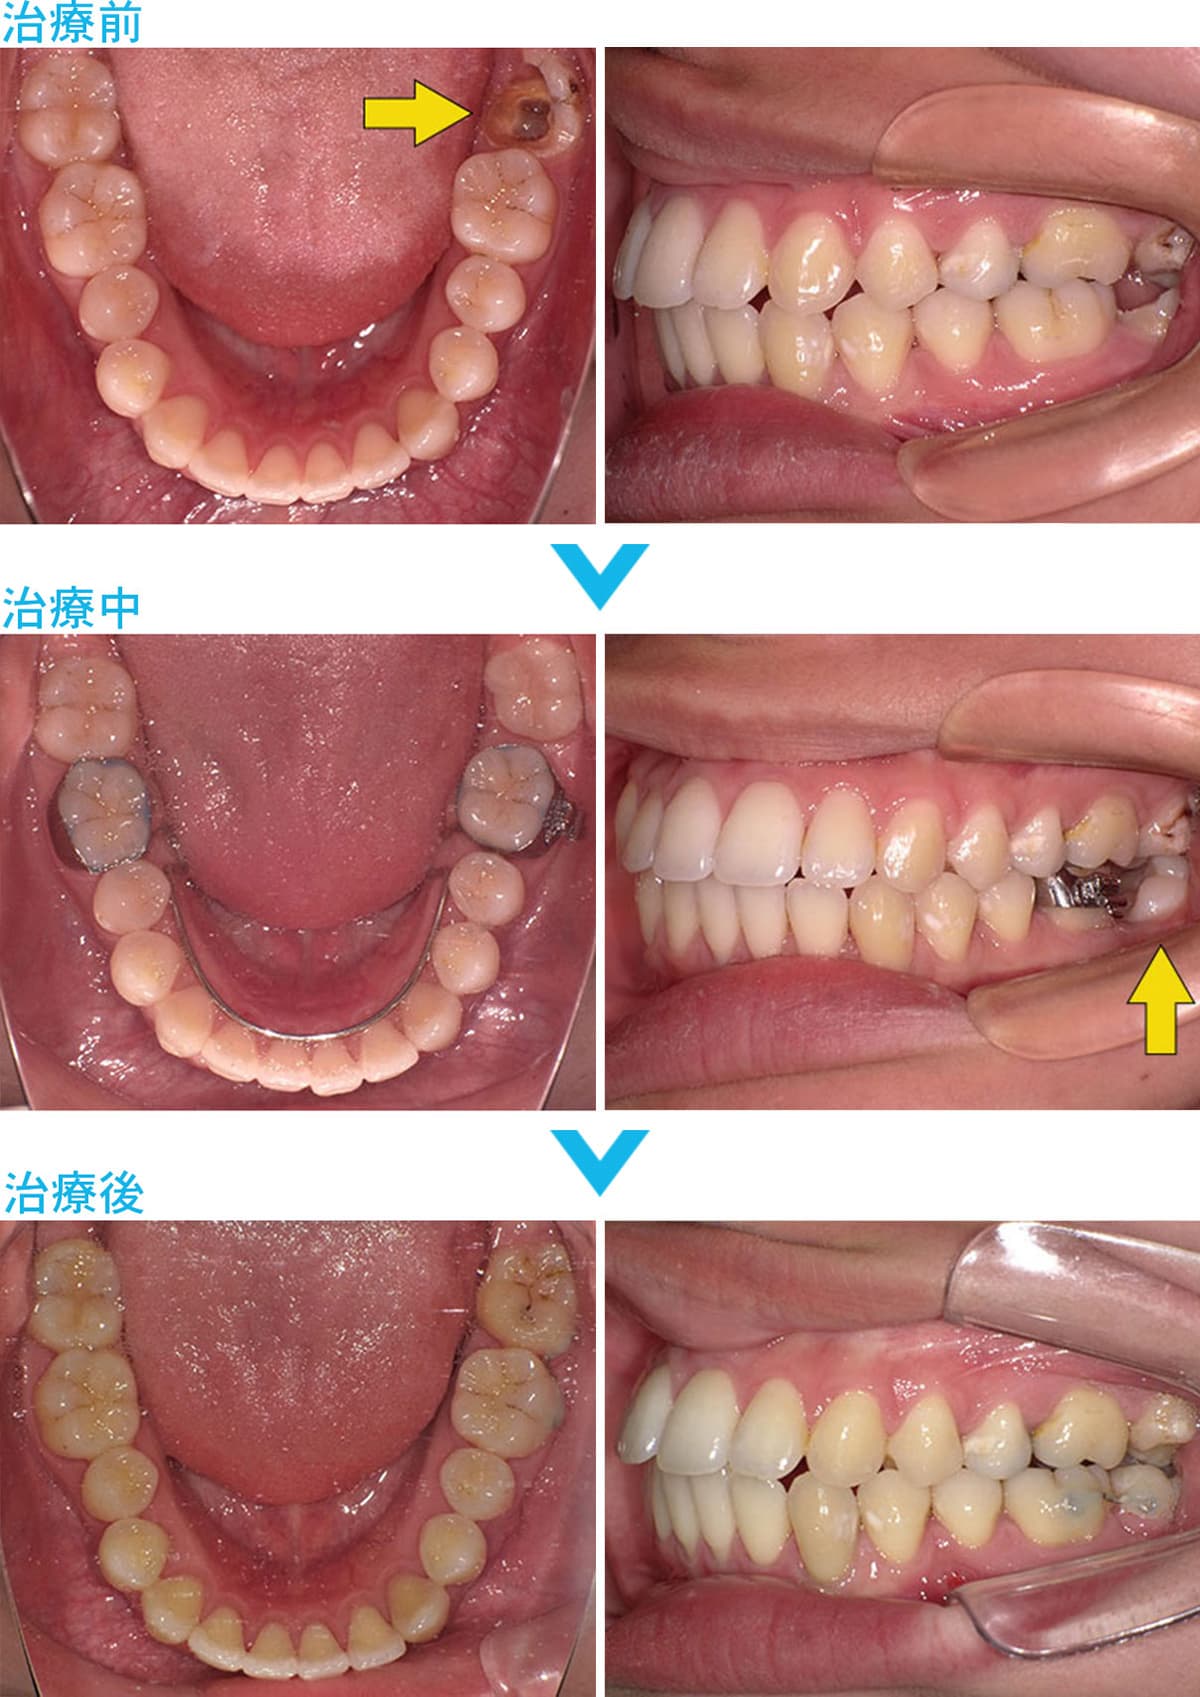 ブリッジ・インプラント・入れ歯を避けた治療の比較